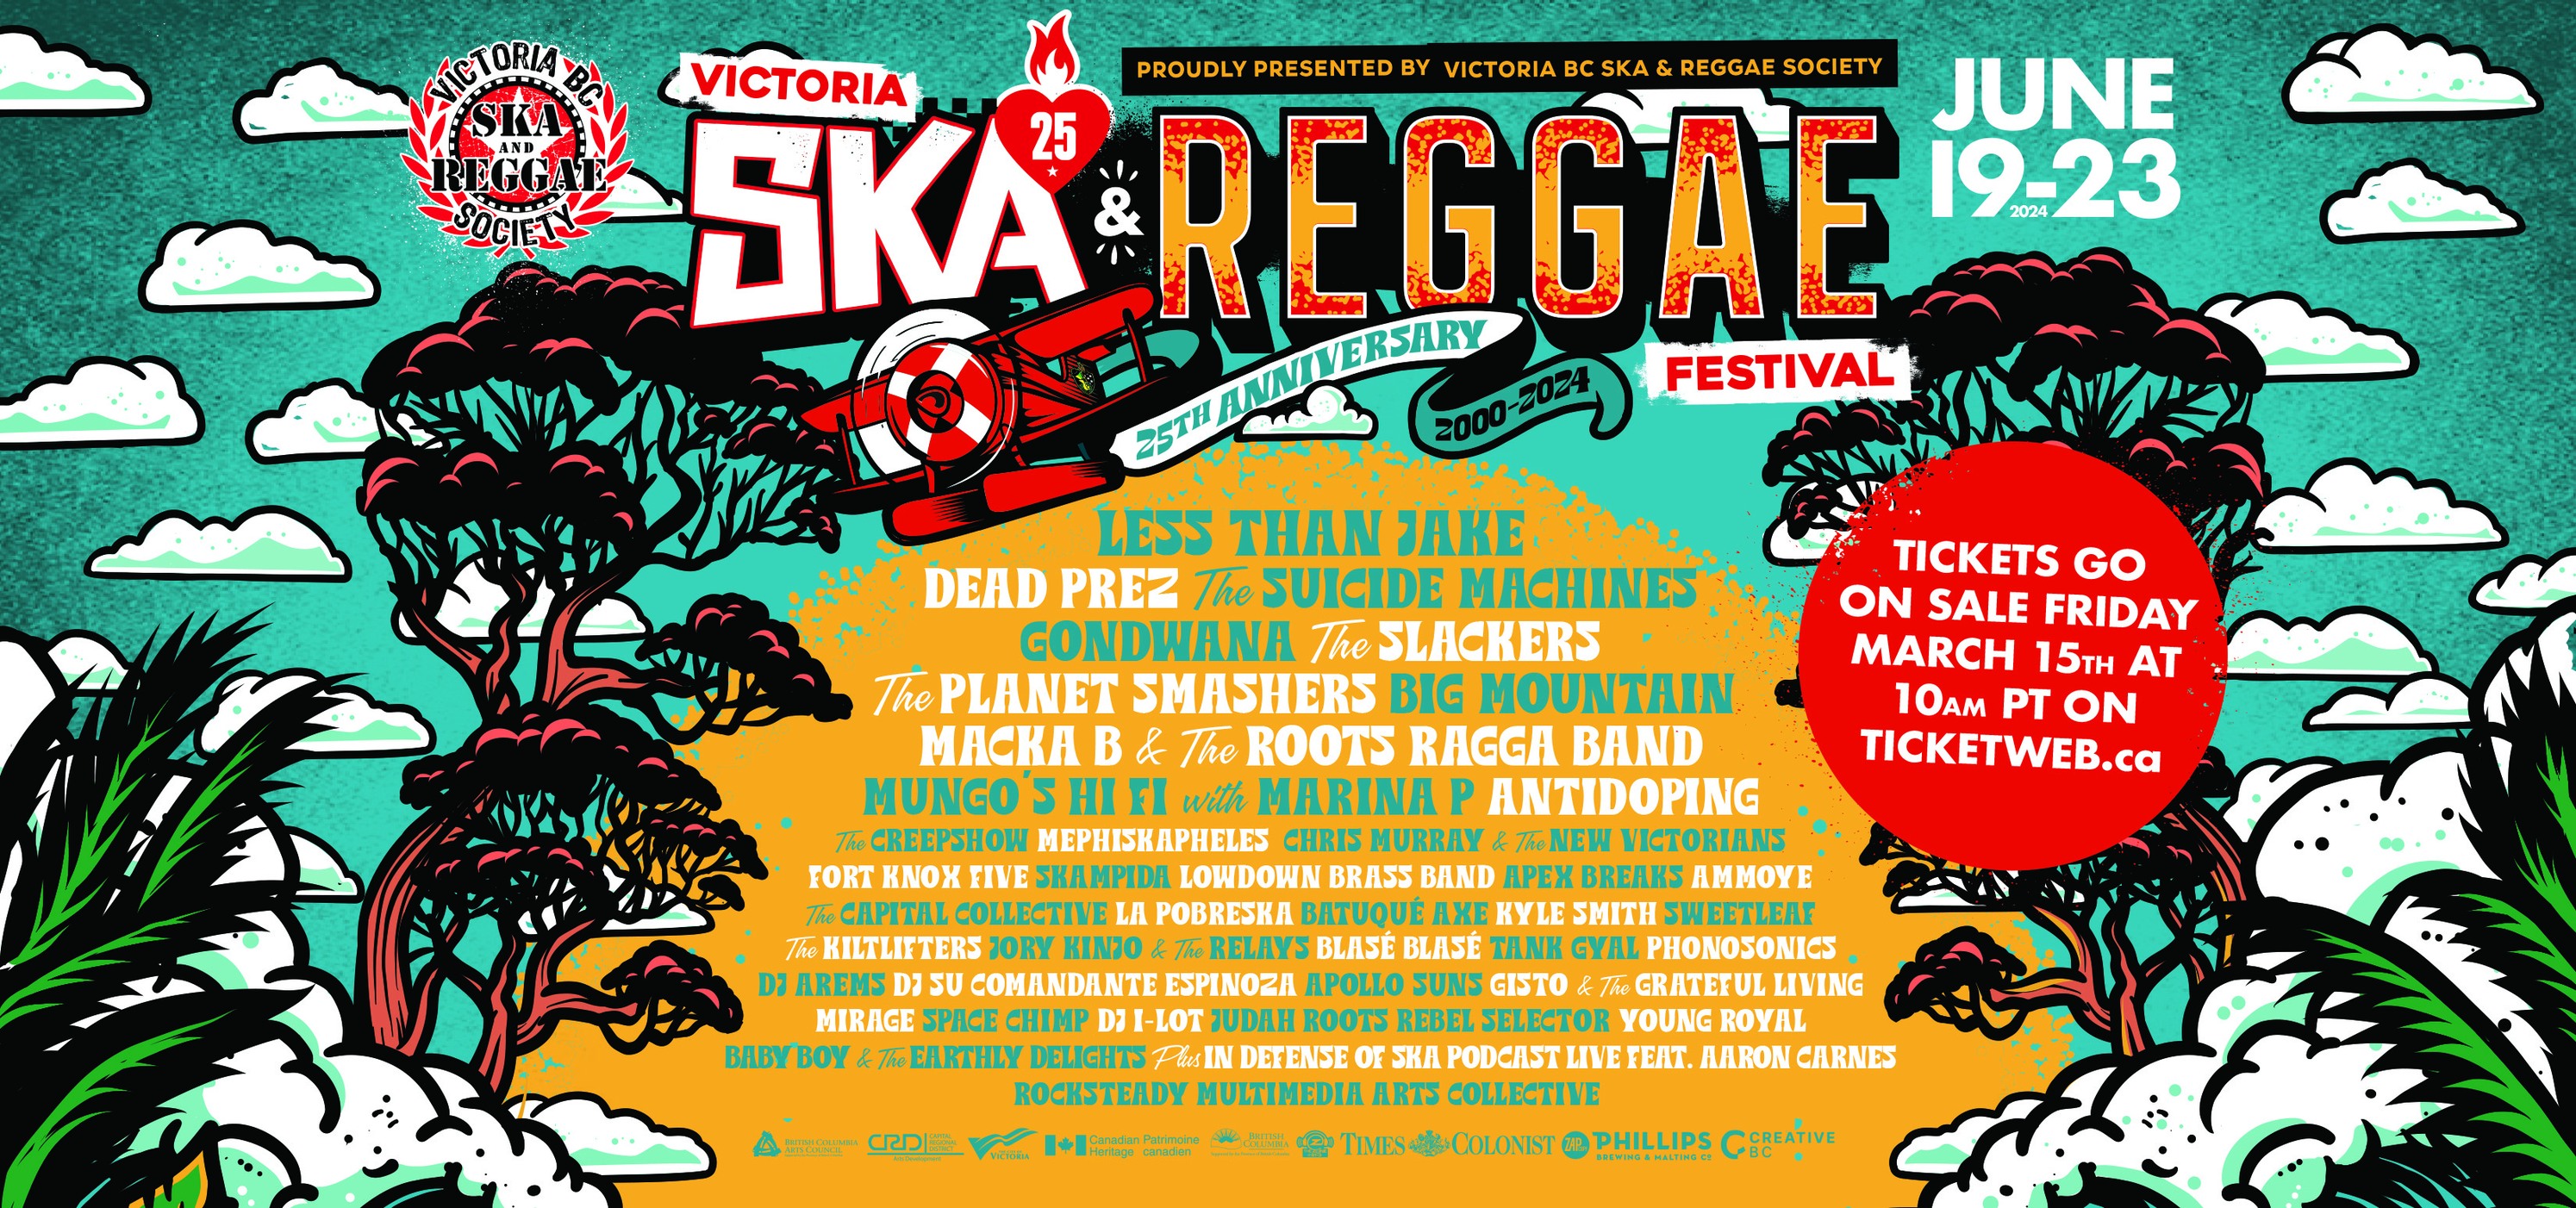 Victoria Ska Fest FestivalSeekers